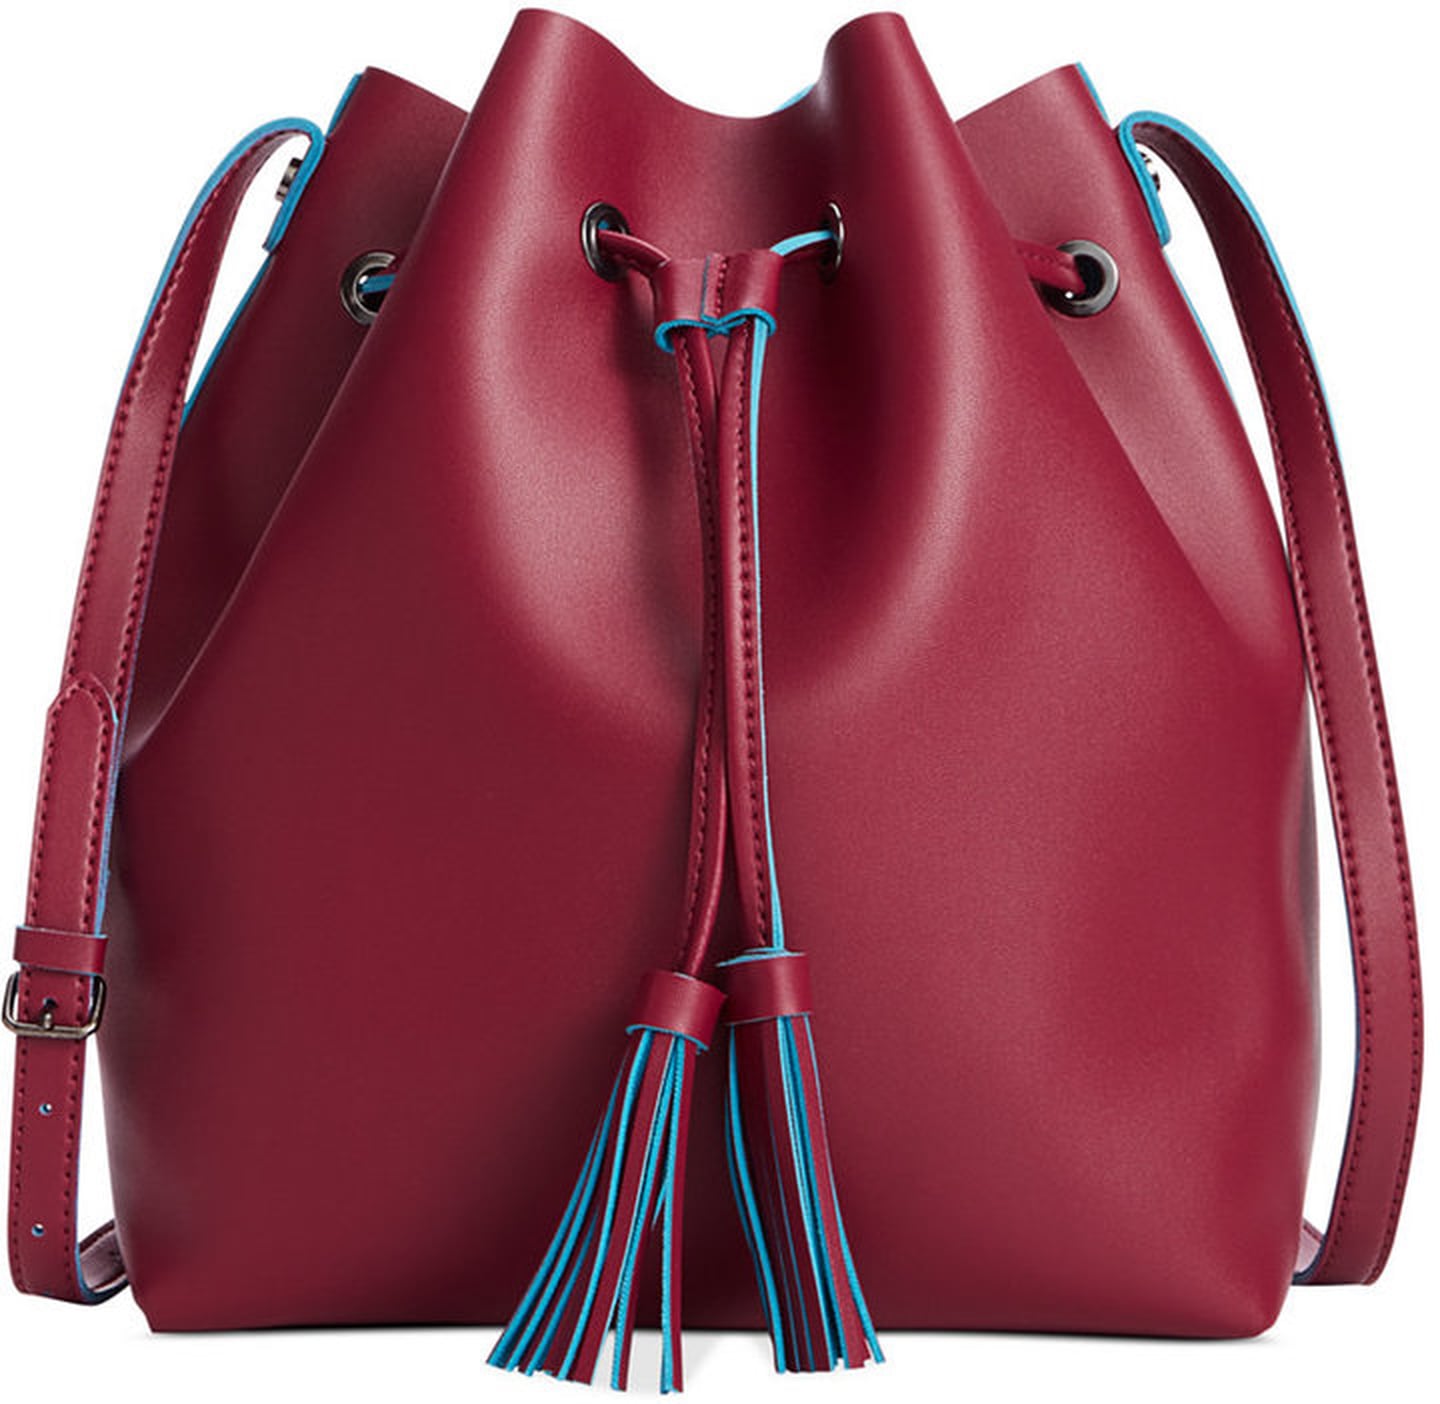 Spring Bag Trends 2015 | POPSUGAR Fashion